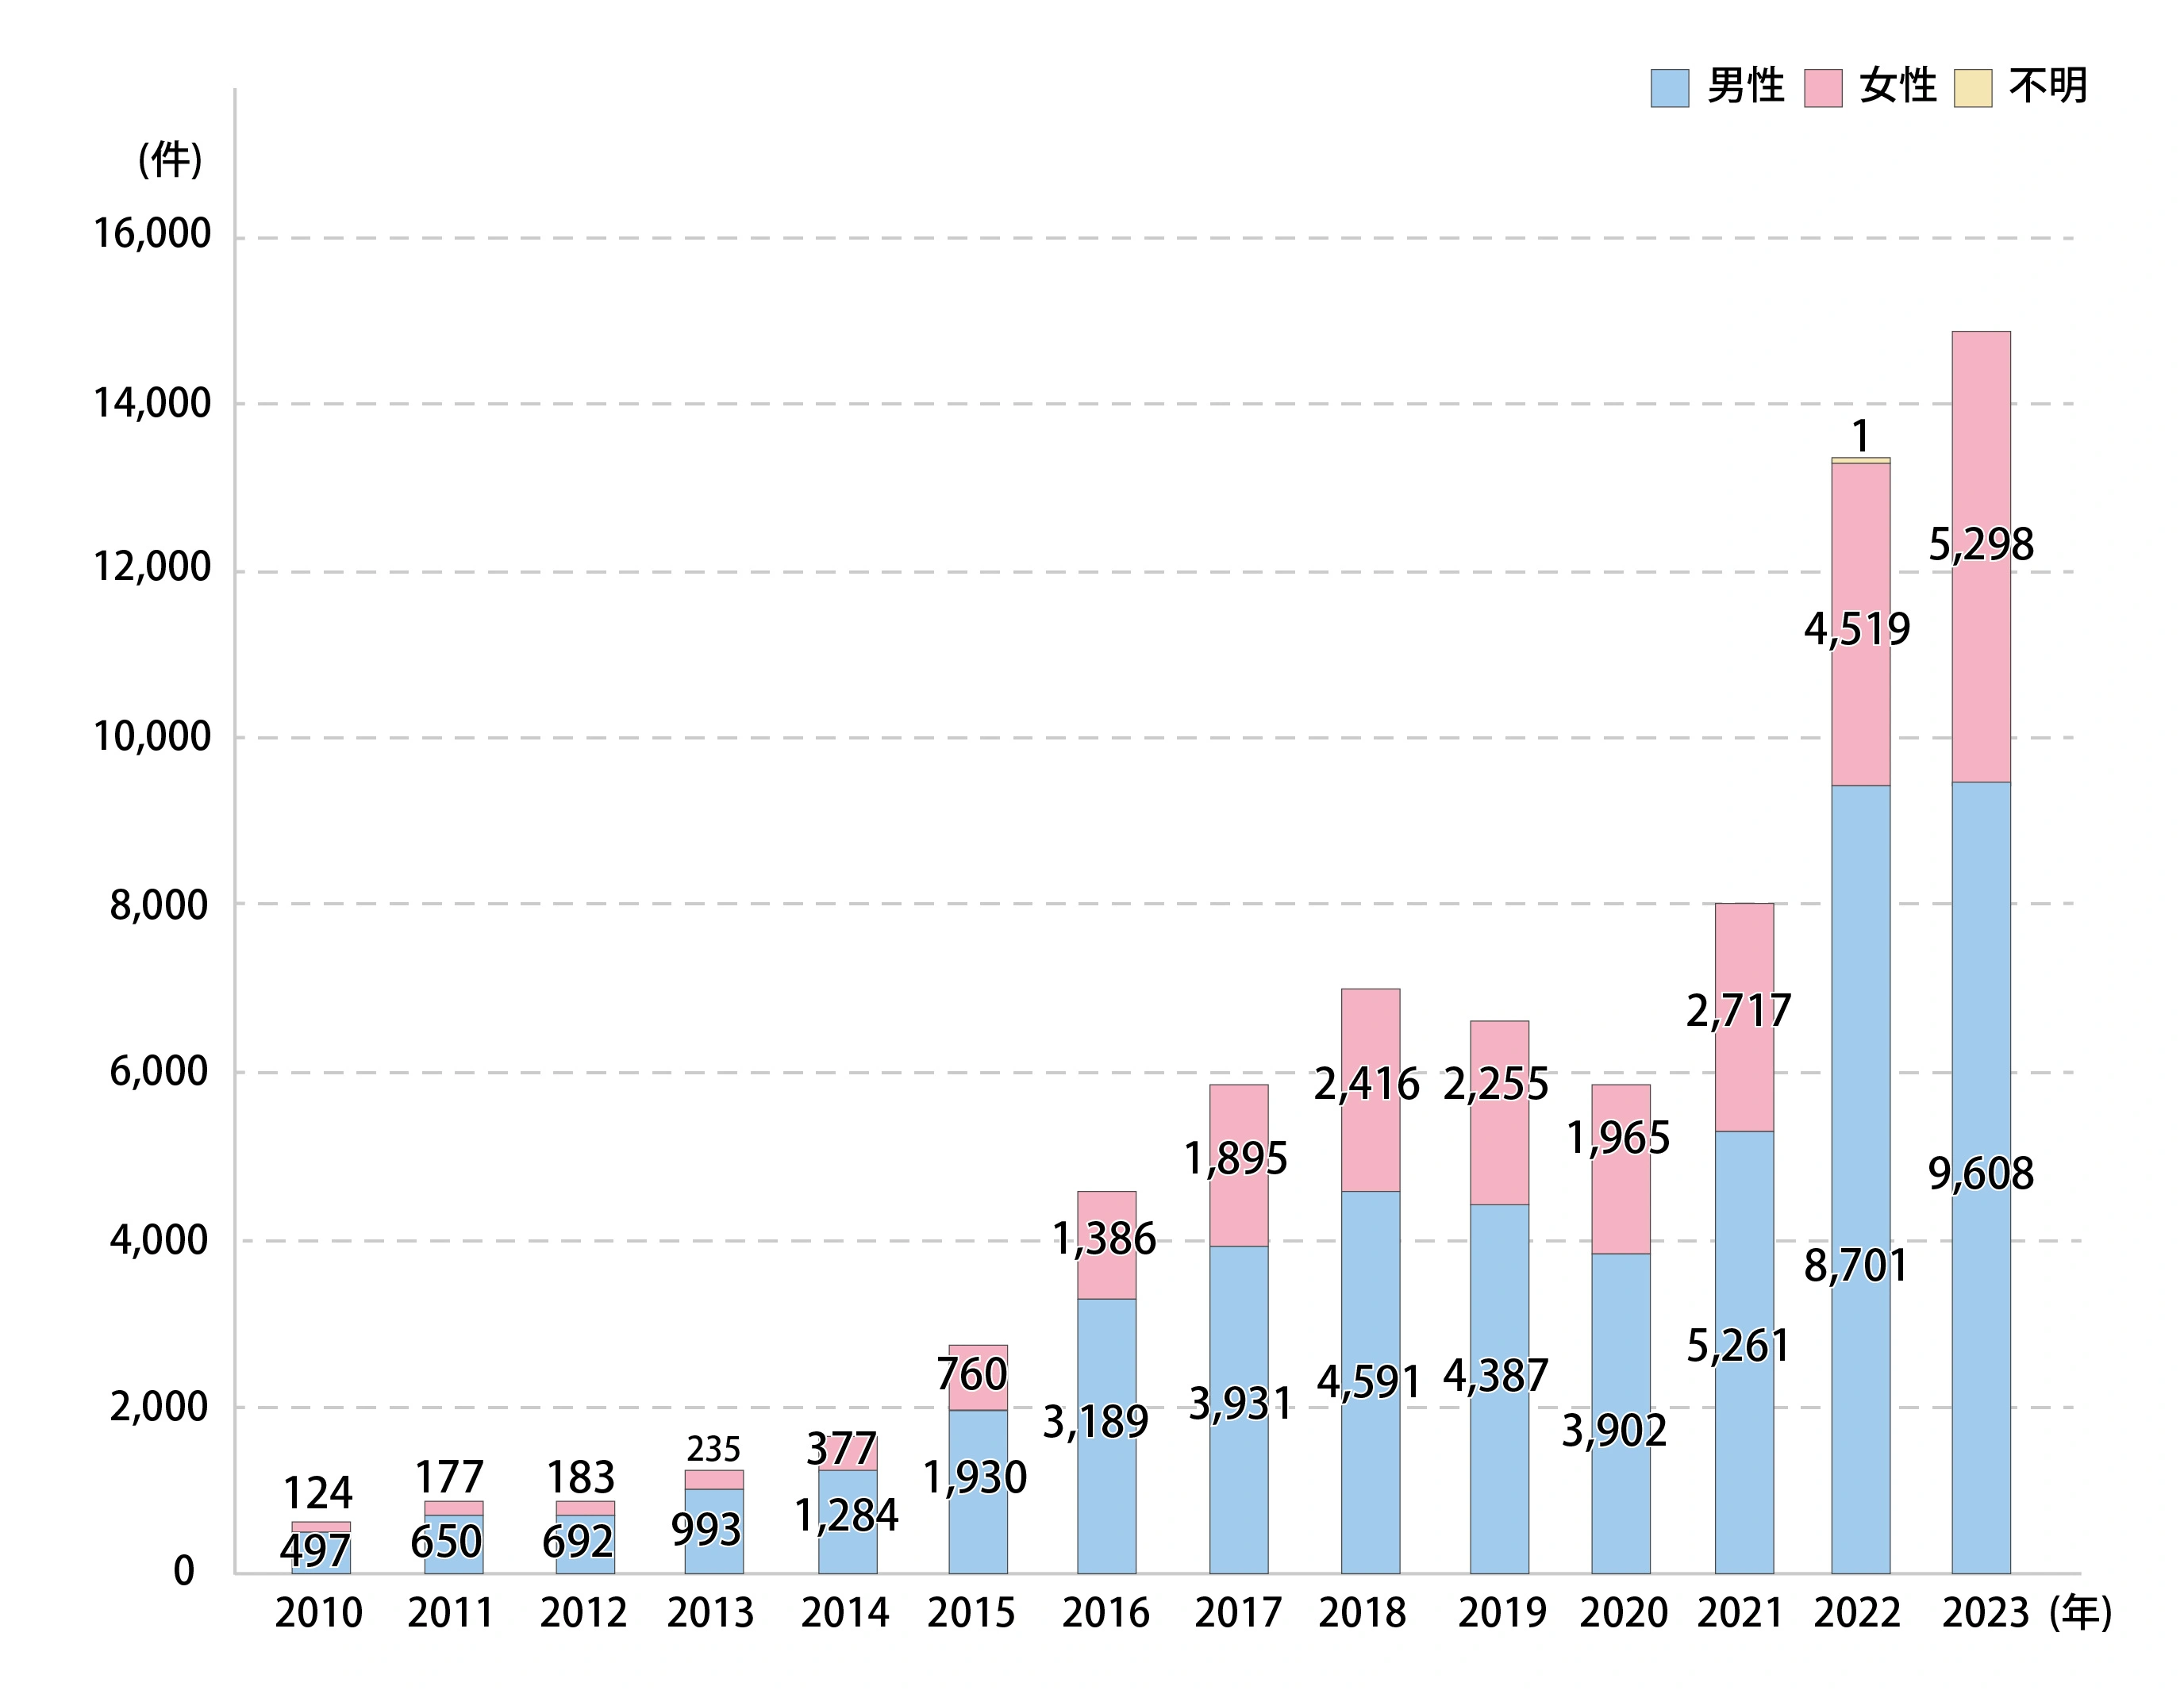 梅毒報告数の推移グラフ。2023年の梅毒報告数は男性9,608人、女性は5,298人の計14,906人となっている。